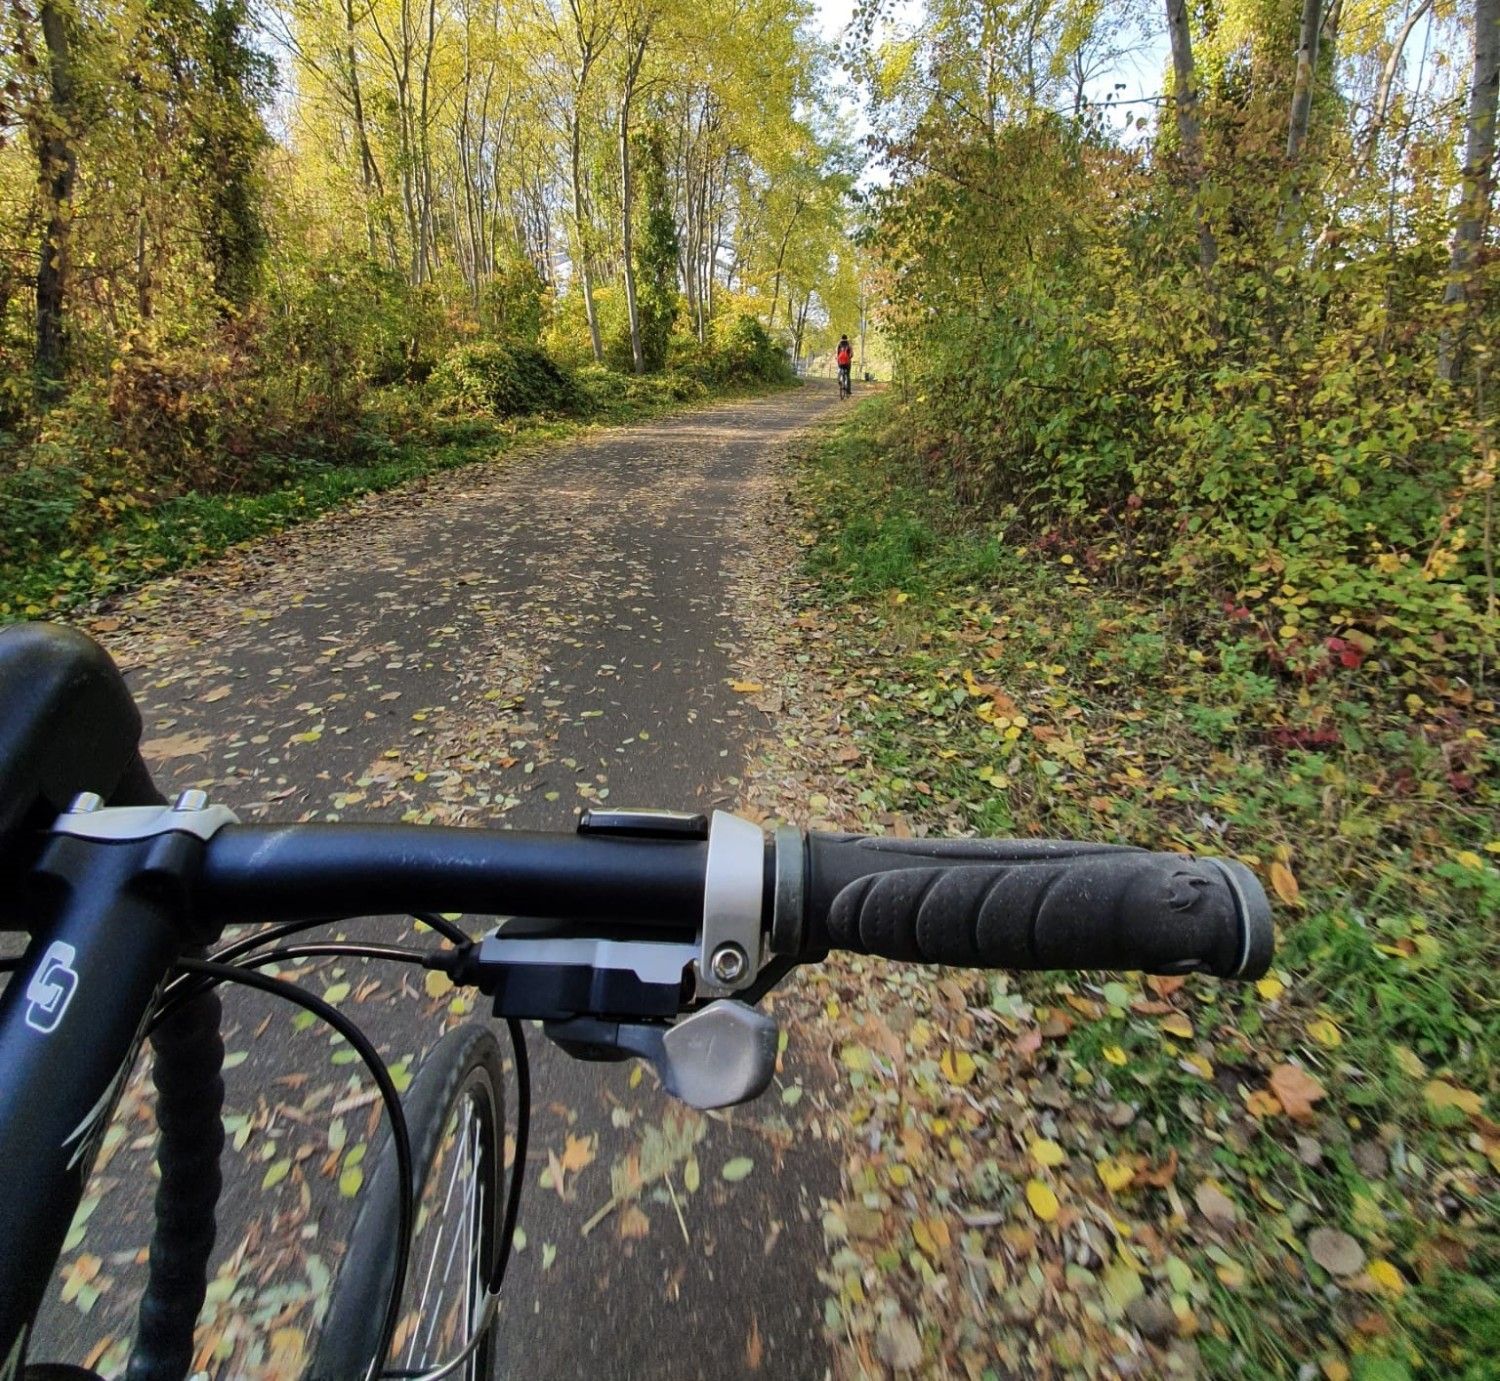 Im Vordergrund ein schwarzer Fahrradlenker. Vor dem Lenker ein asphaltierter Weg. Rechts und links des Weges ein Grünstreifen und viele Bäume. Blätter sind schon abgefallen und liegen auf dem Weg herum.